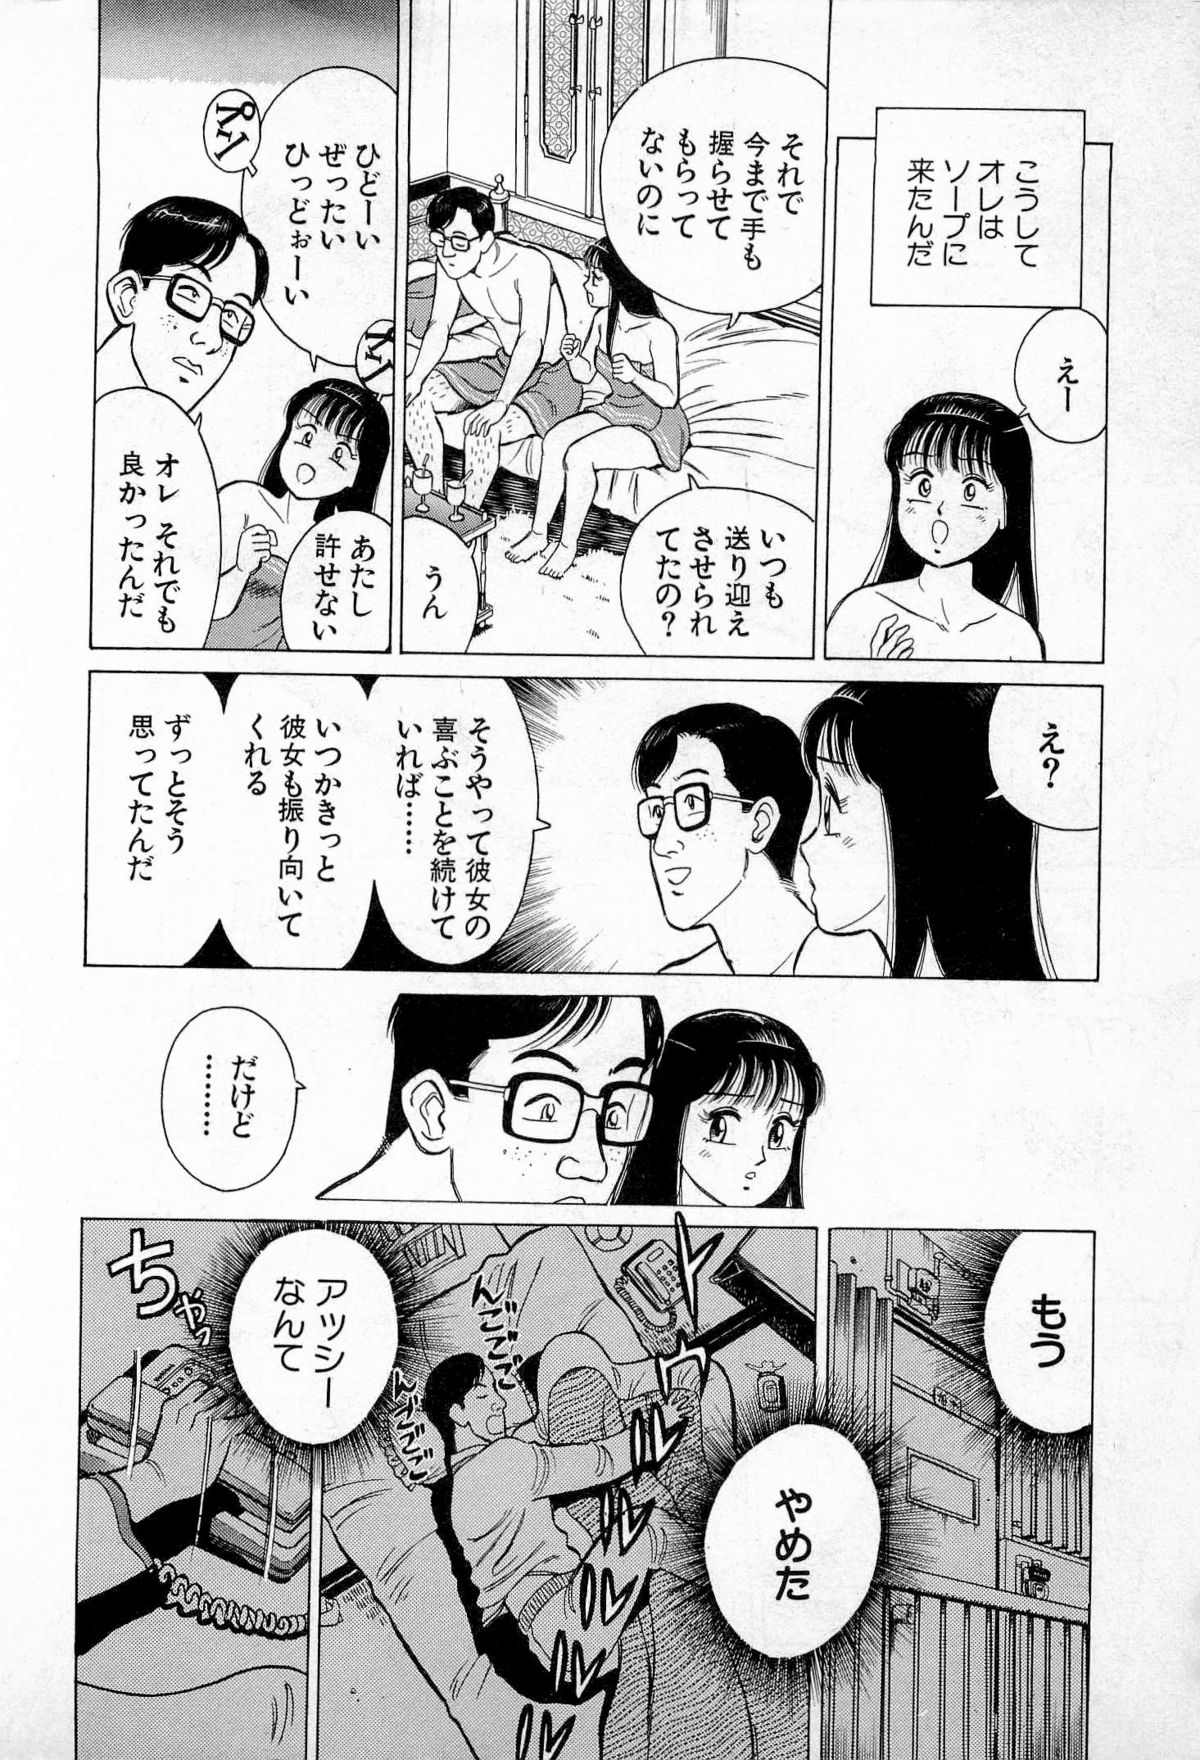 [久寿川なるお] SOAPのMOKOちゃん Vol.3